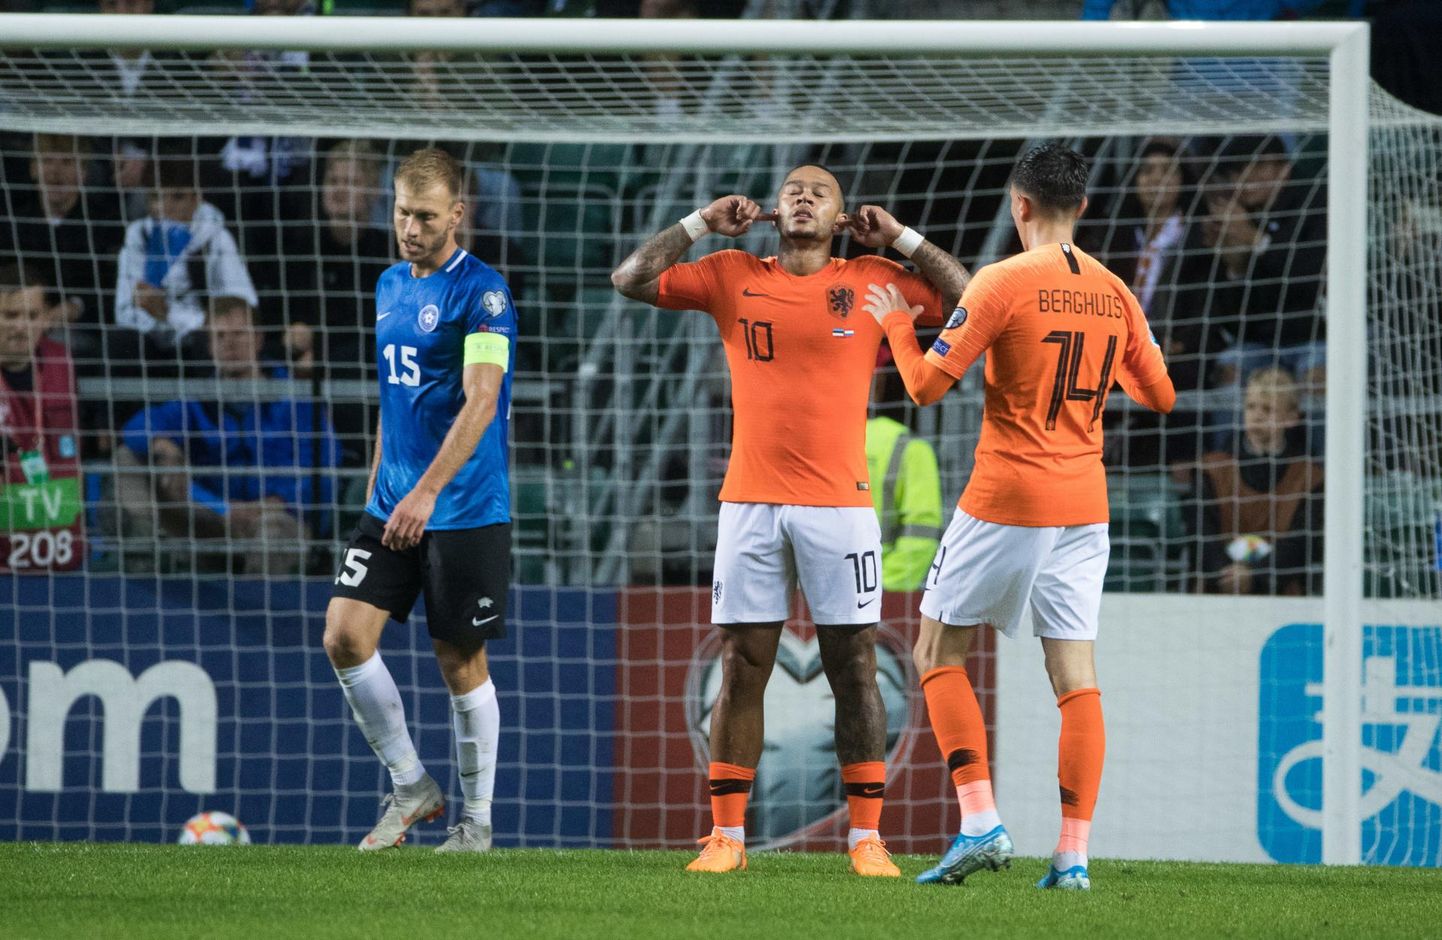 Eesti koondis jäi esmaspäeva õhtul Hollandile alla 0:4. A. Le Coq Arenal sai Hollandi koondise koosseisus jala valgeks ka Prantsusmaa kõrgliigas Lyoni ridades mängiv Memphis Depay (10).